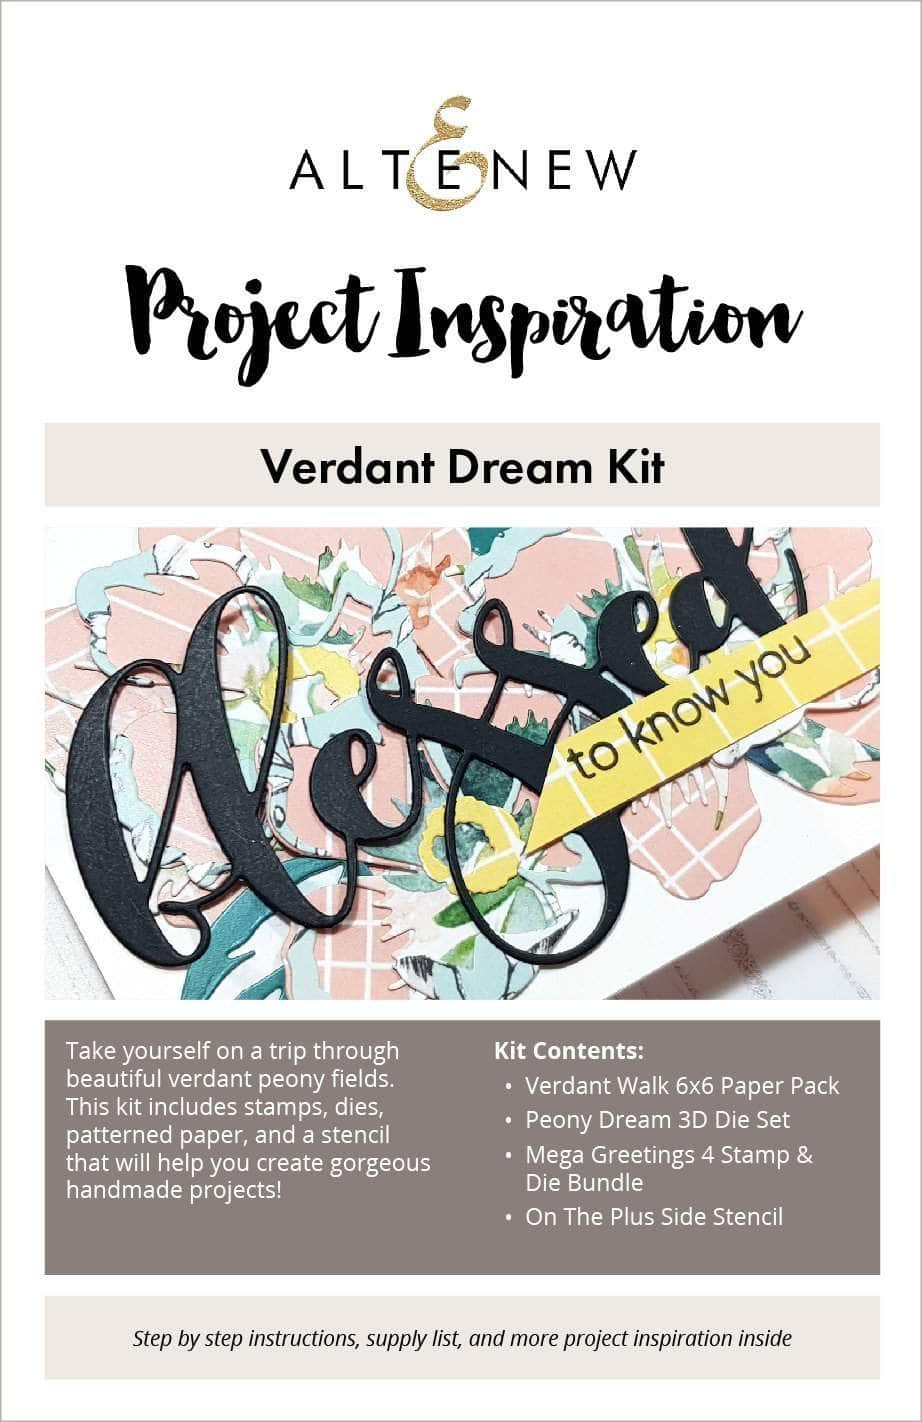 Printed Media Verdant Dream Kit Inspiration Guide